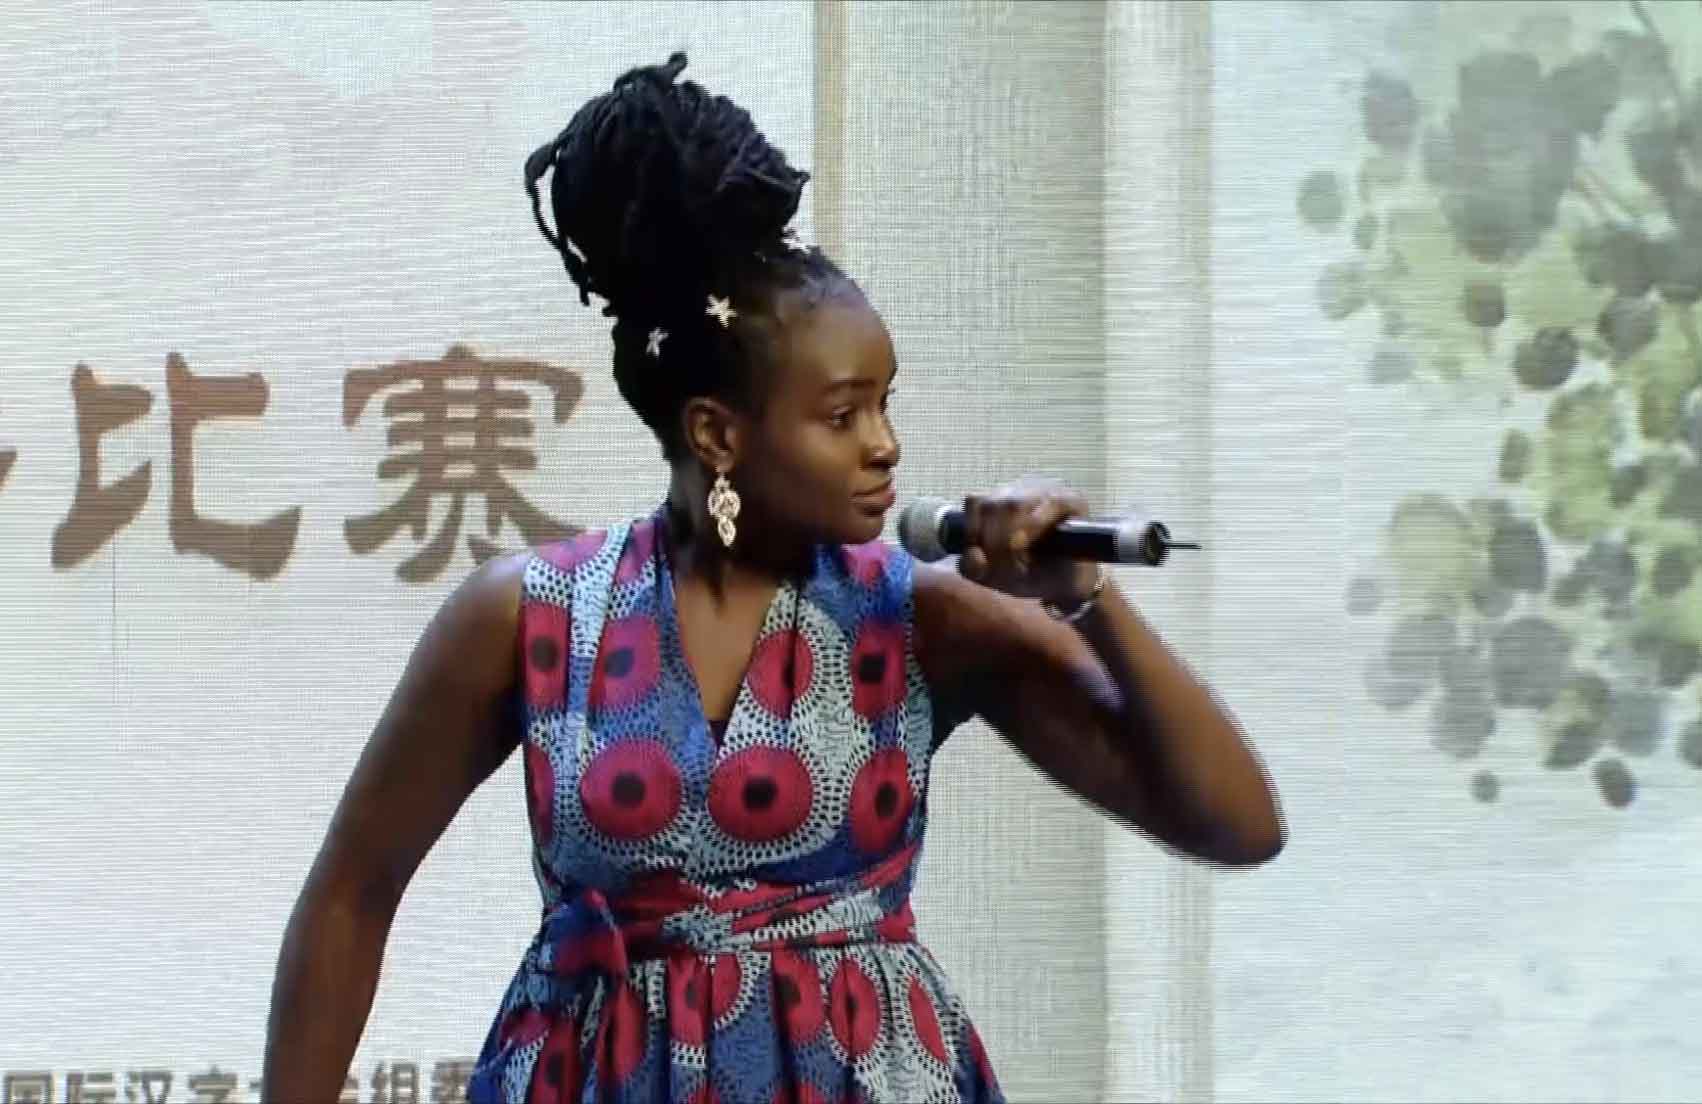 Nigerian girl sings Yu Opera Mulan in Zhengzhou, Central China